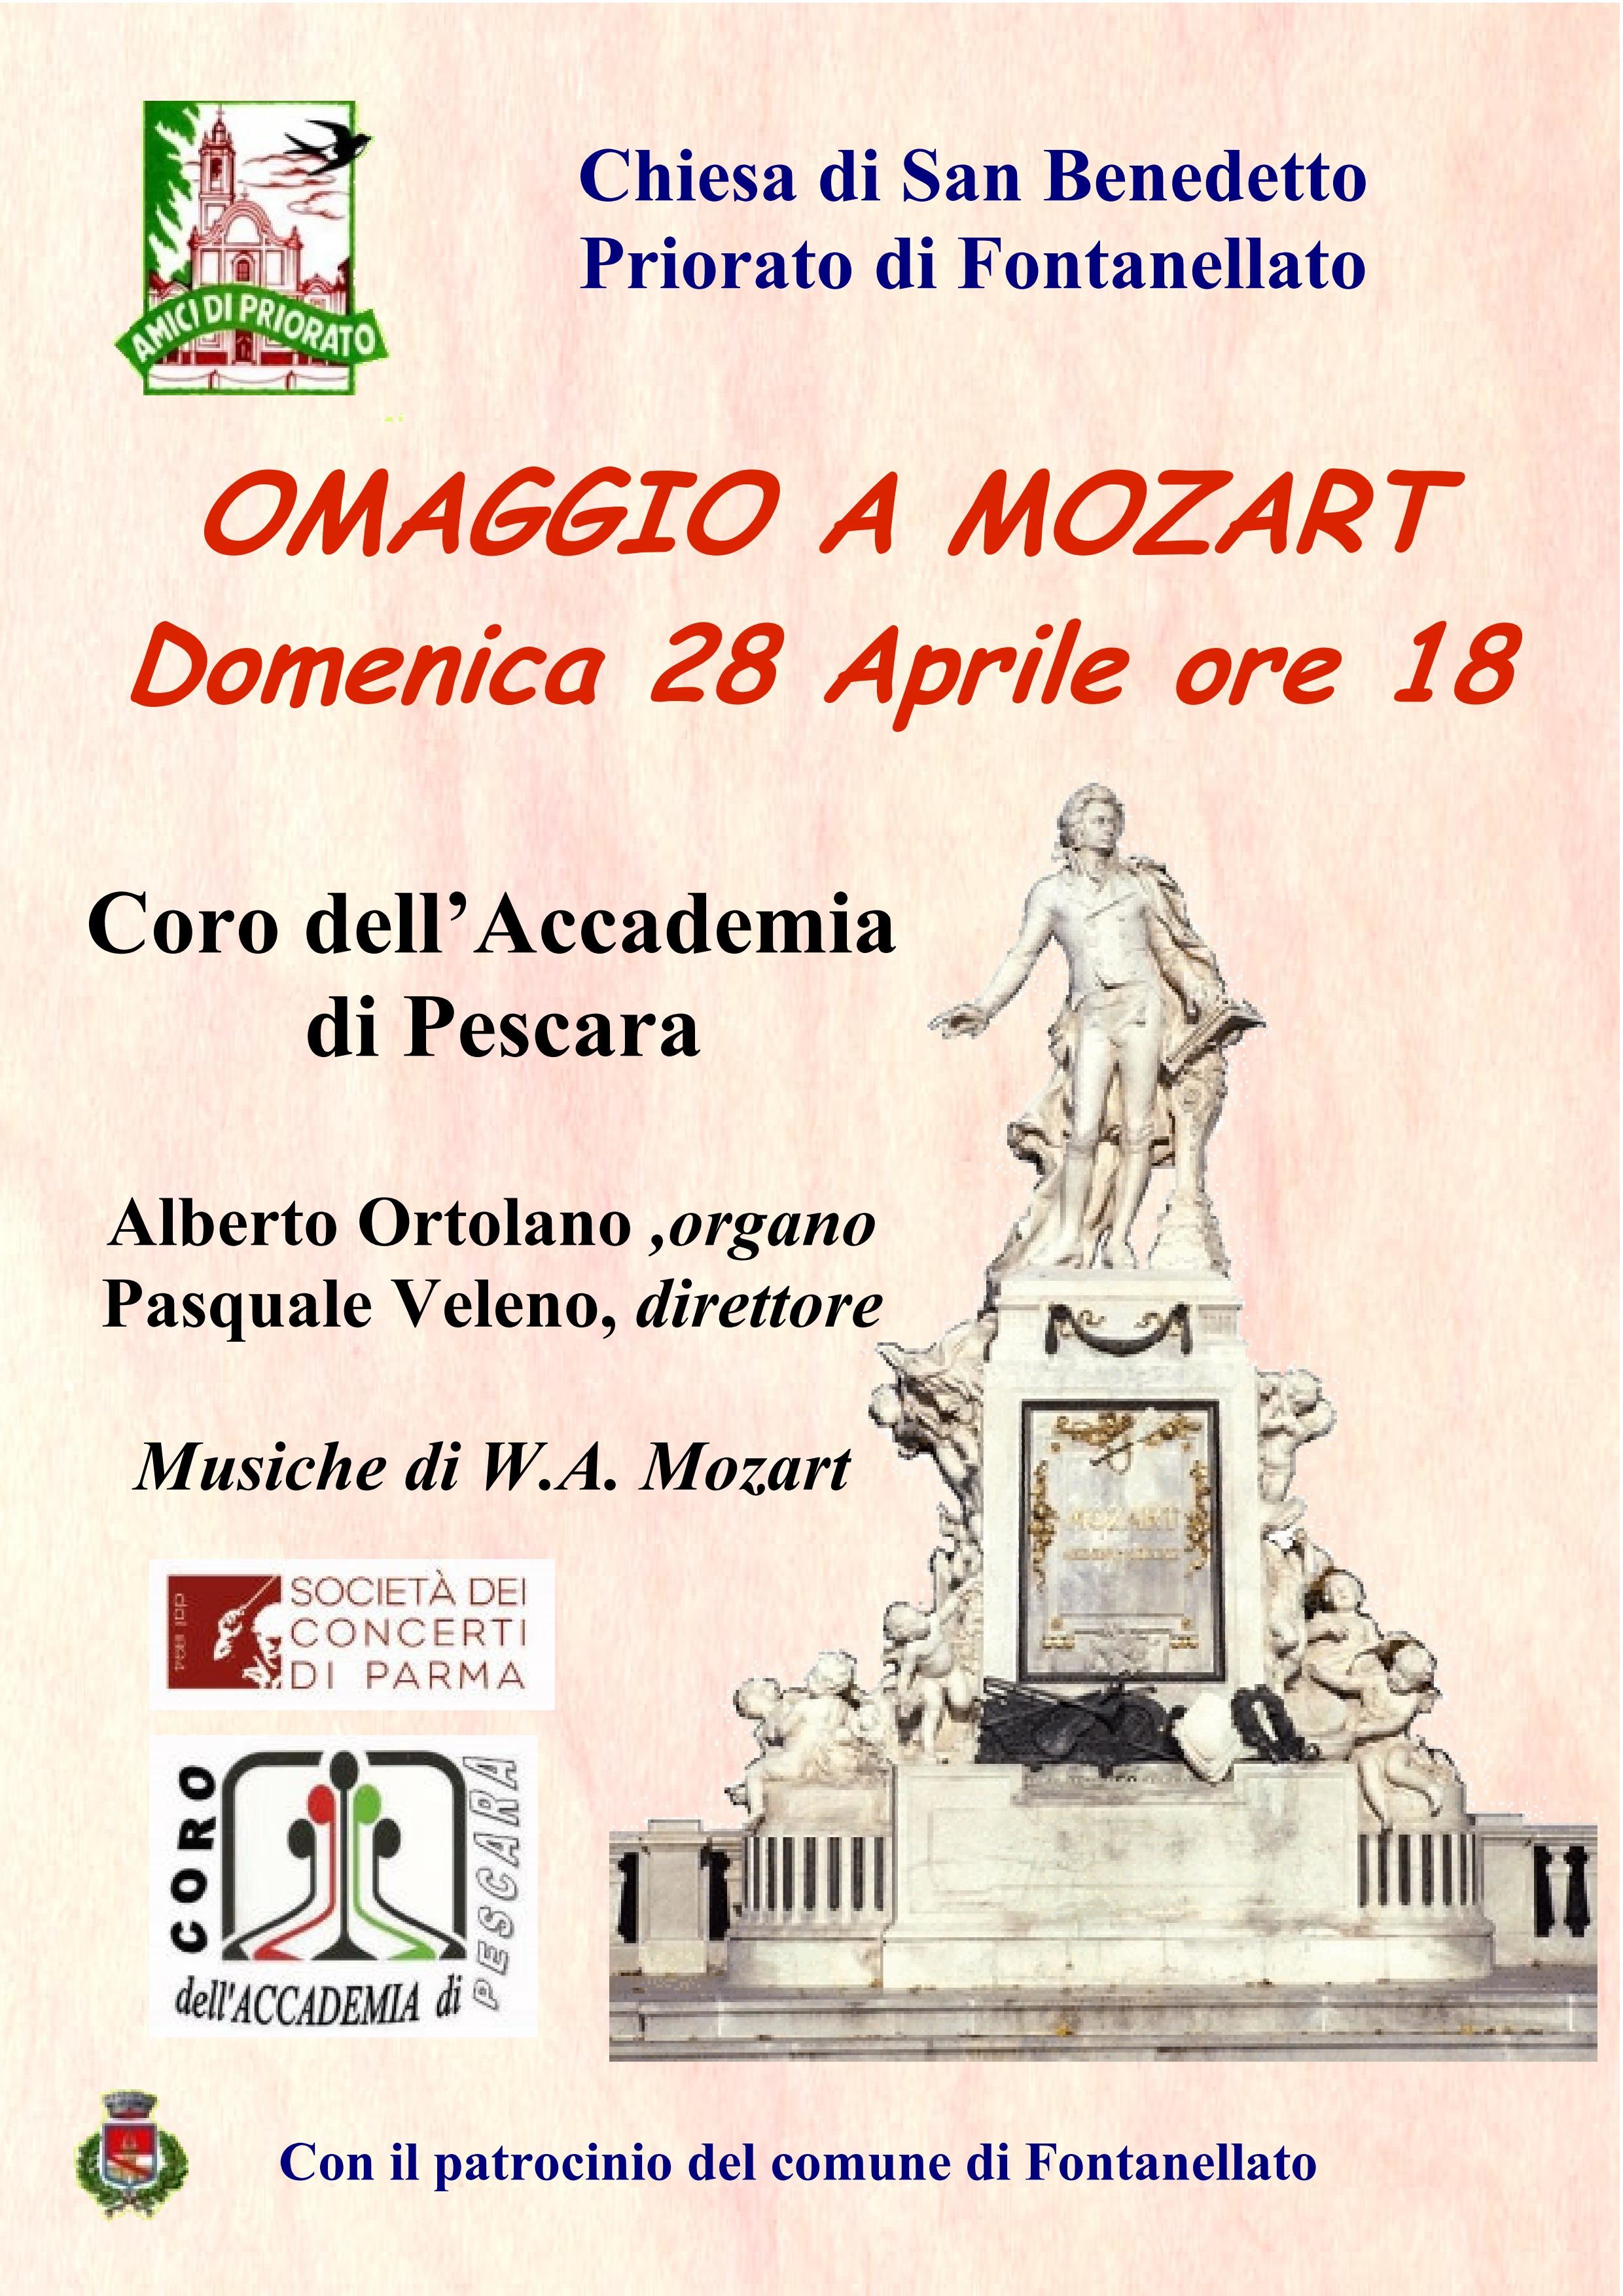 Omaggio a Mozart concerto del Coro dell'accademia di Pescara a Priorato